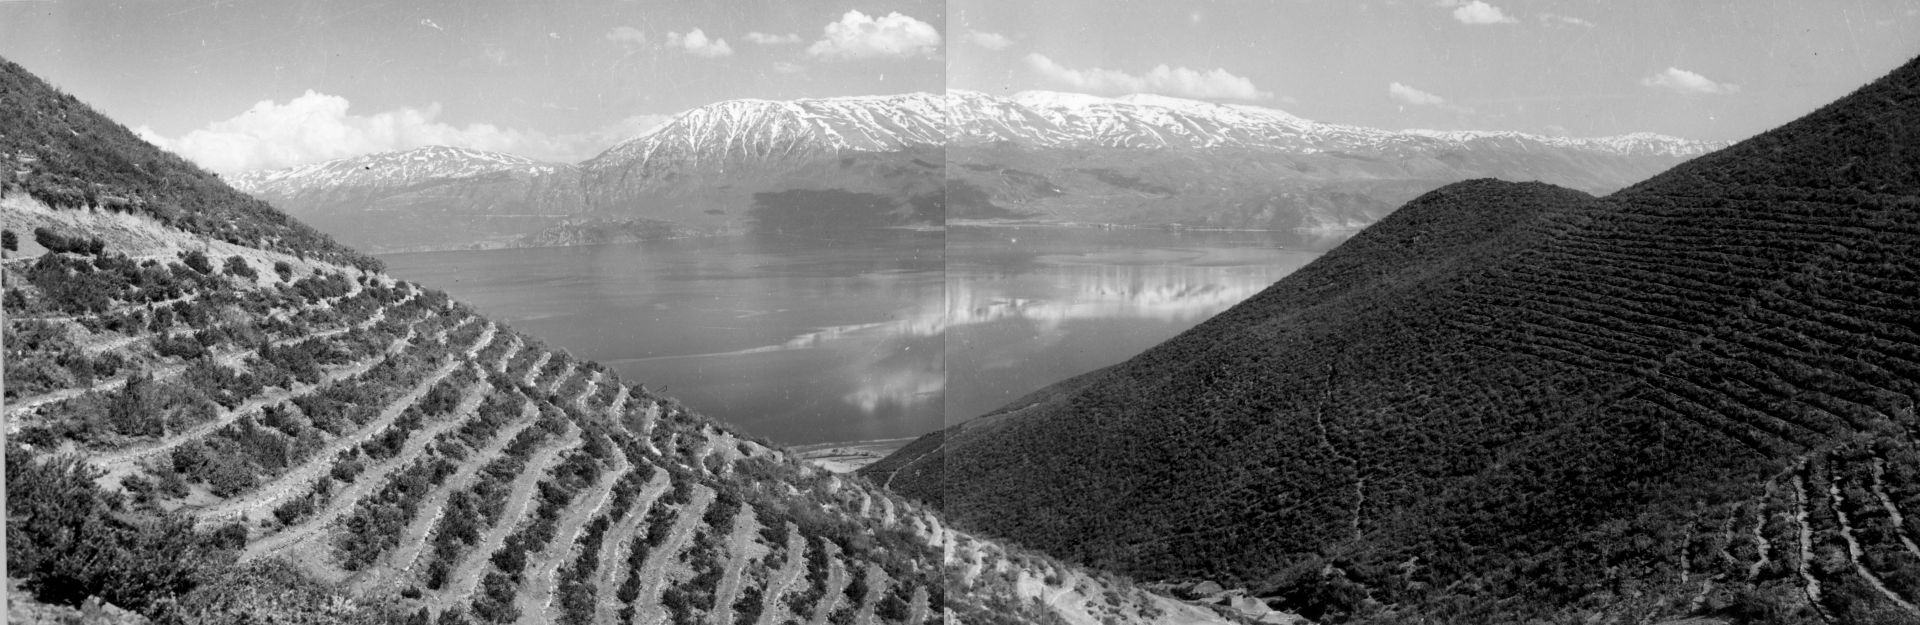 Изглед от Албания през 1950 година